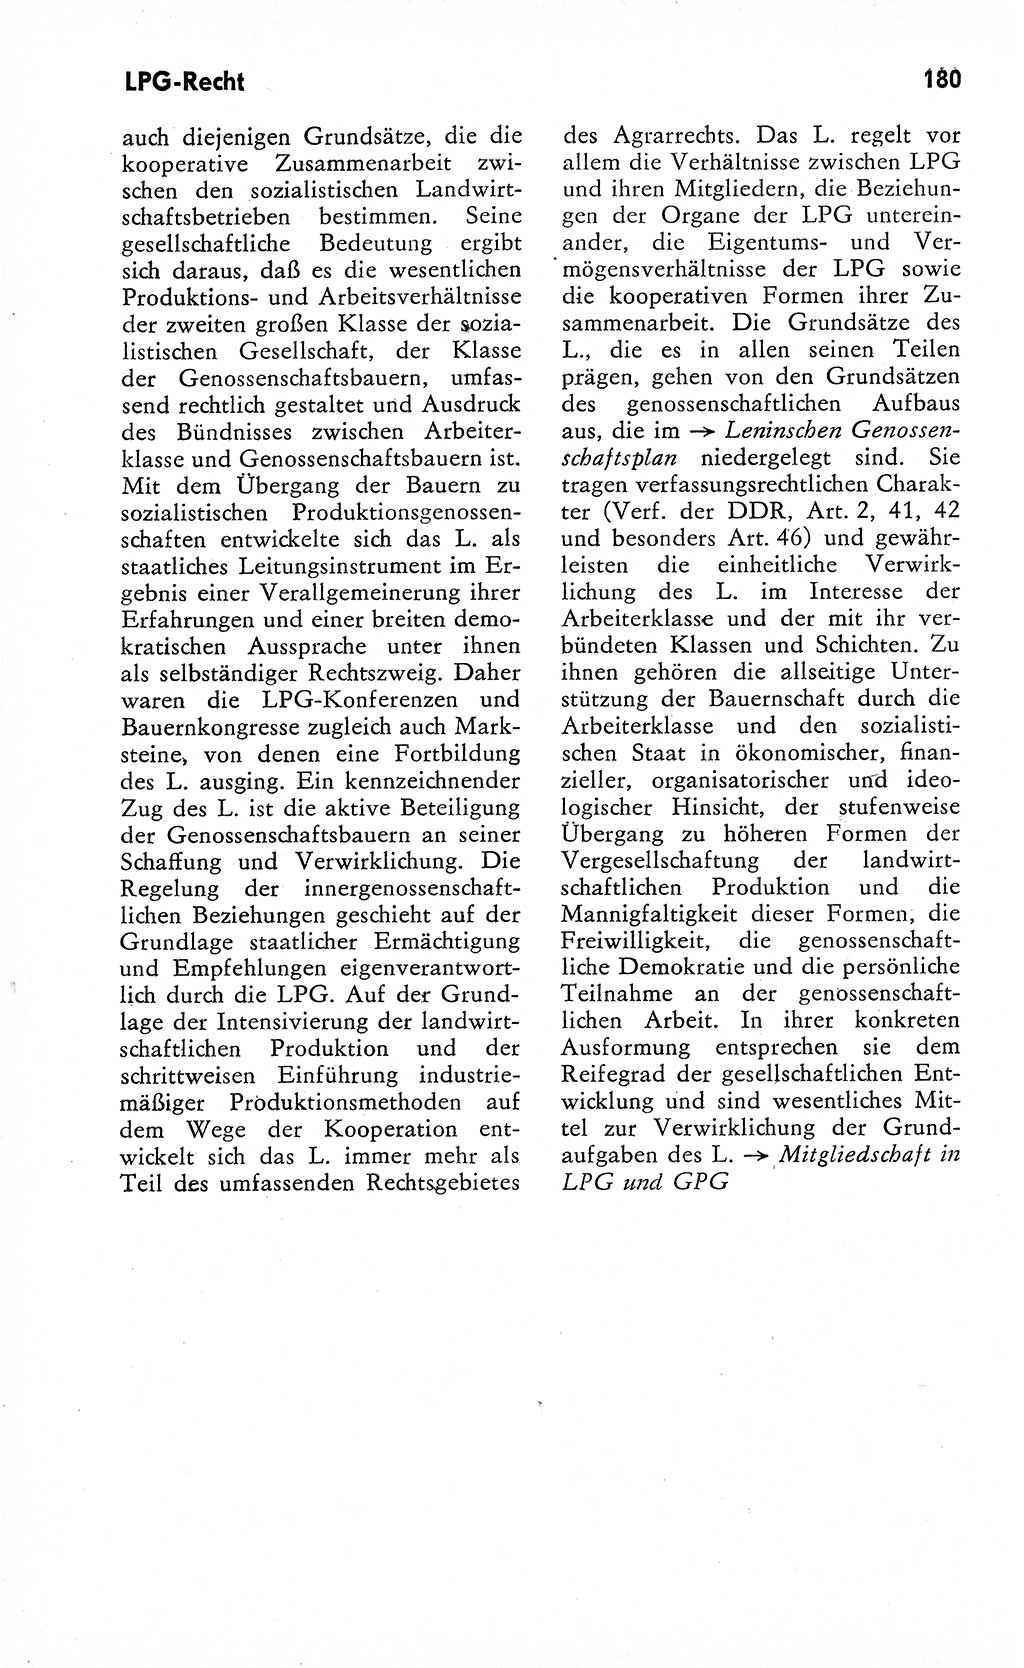 Wörterbuch zum sozialistischen Staat [Deutsche Demokratische Republik (DDR)] 1974, Seite 180 (Wb. soz. St. DDR 1974, S. 180)